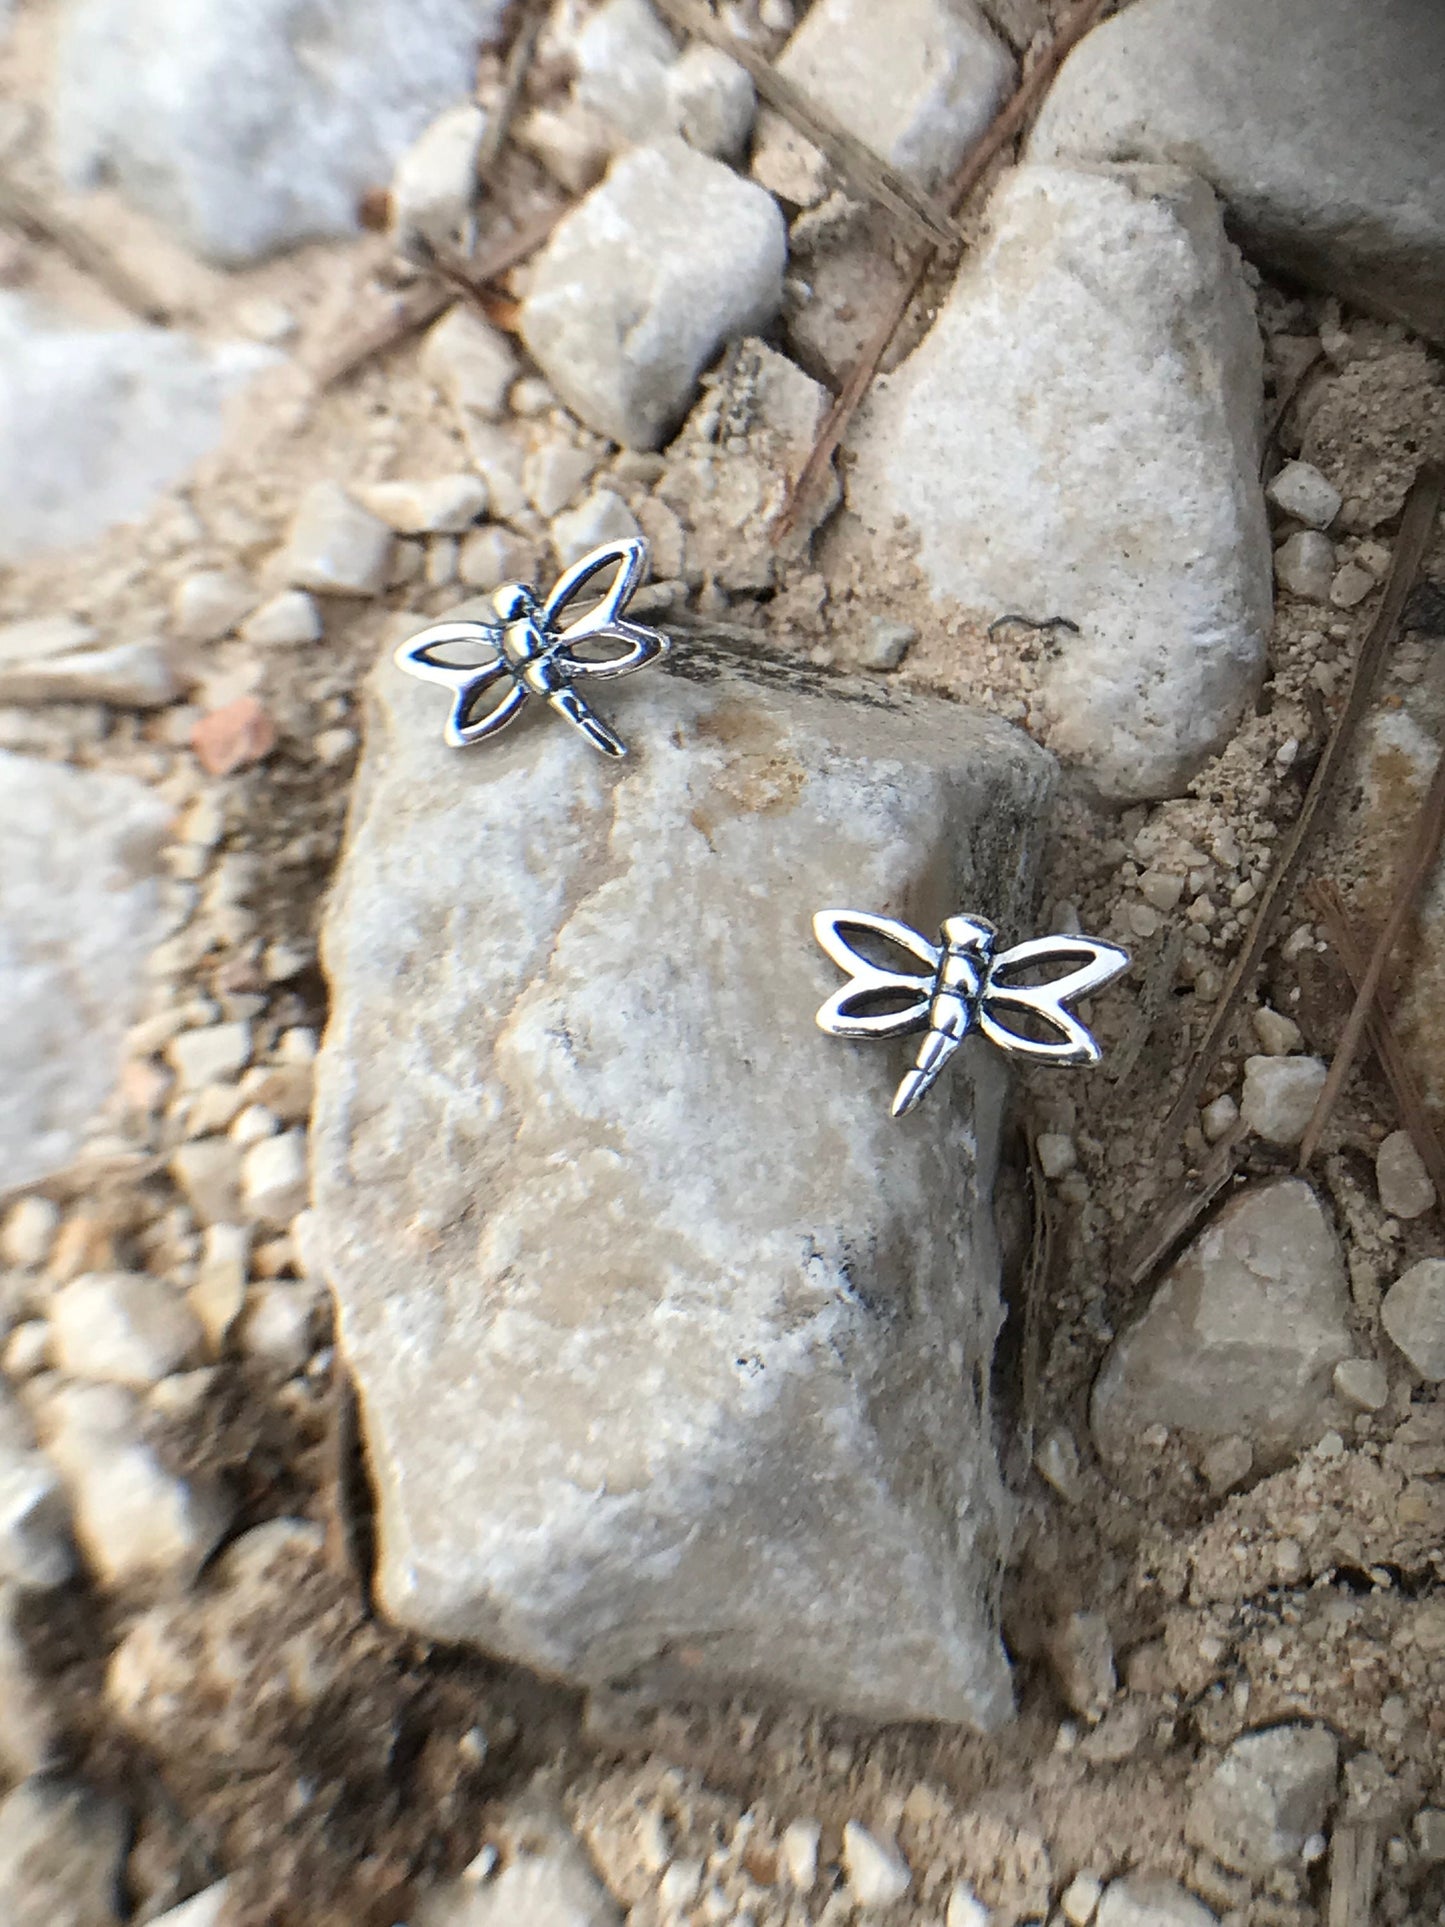 Dragonfly earrings Sterling Silver 925 - TSE040